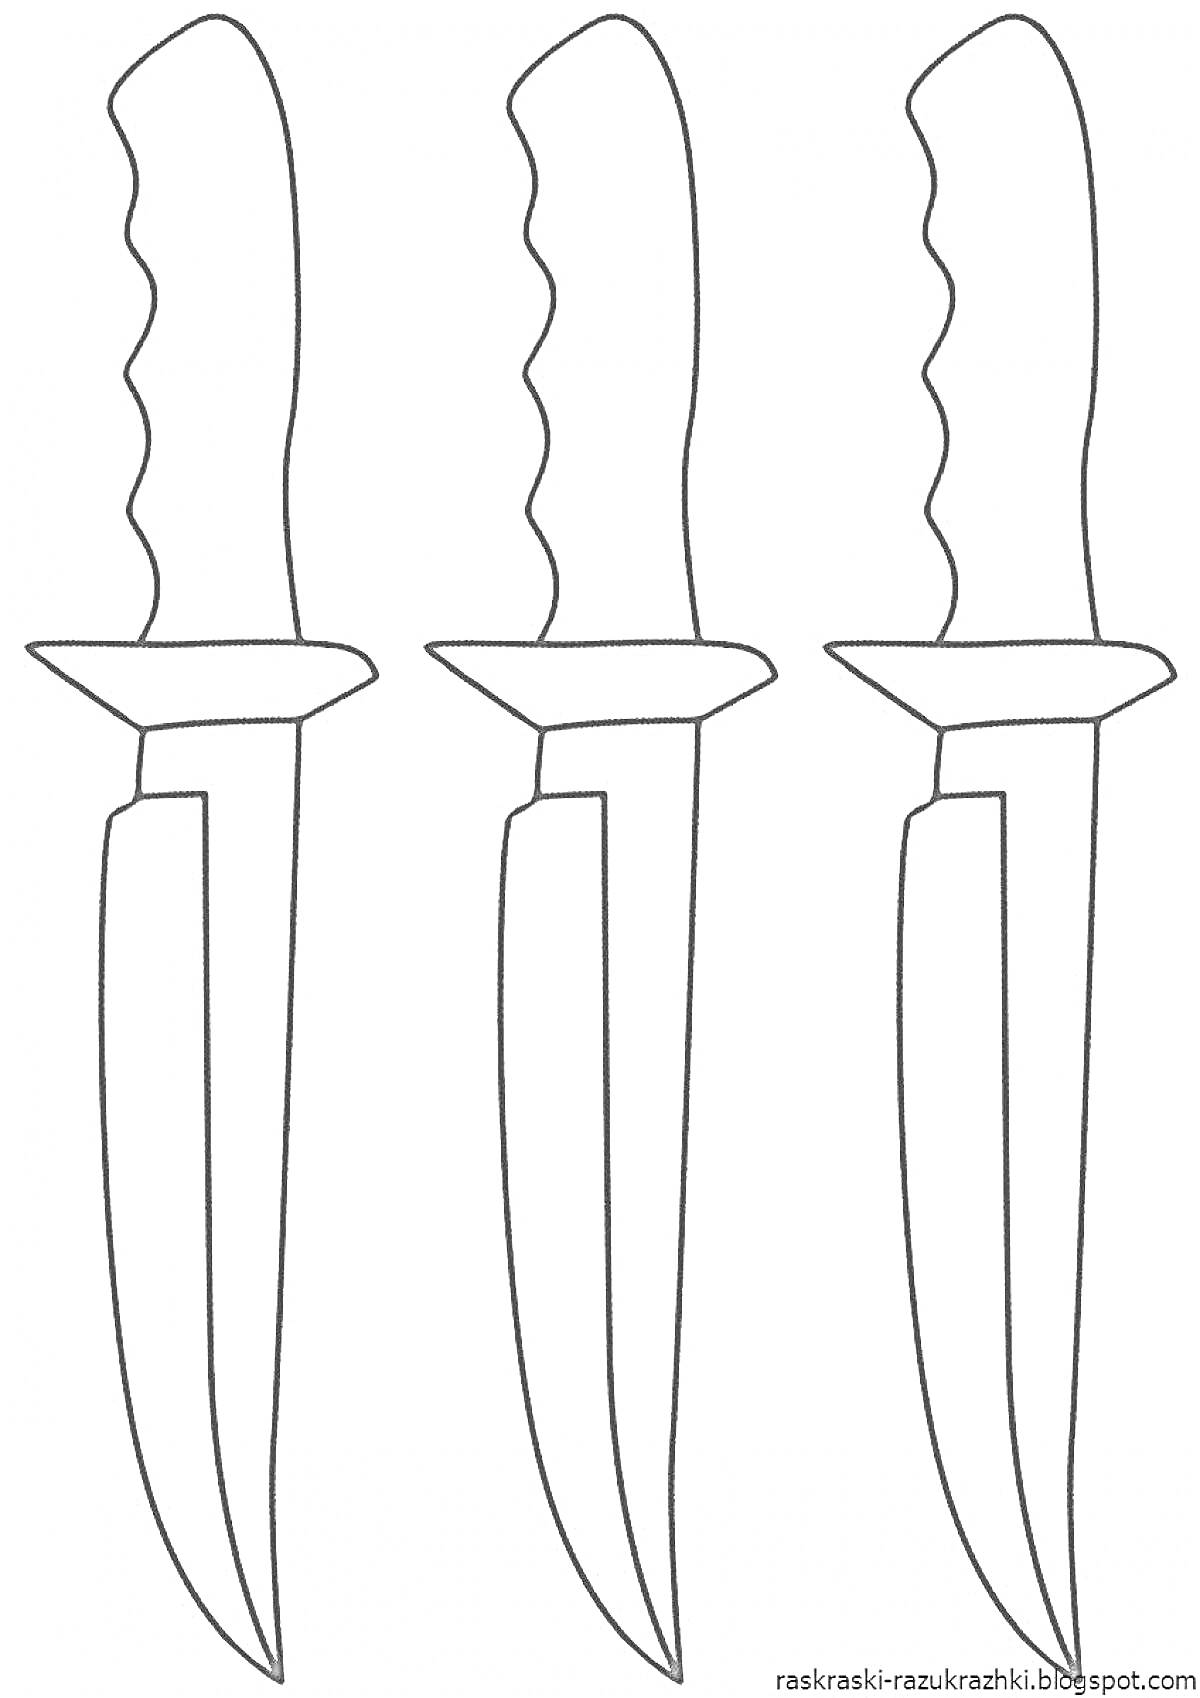 Раскраска Три ножа с ручками-анатомическими выемками